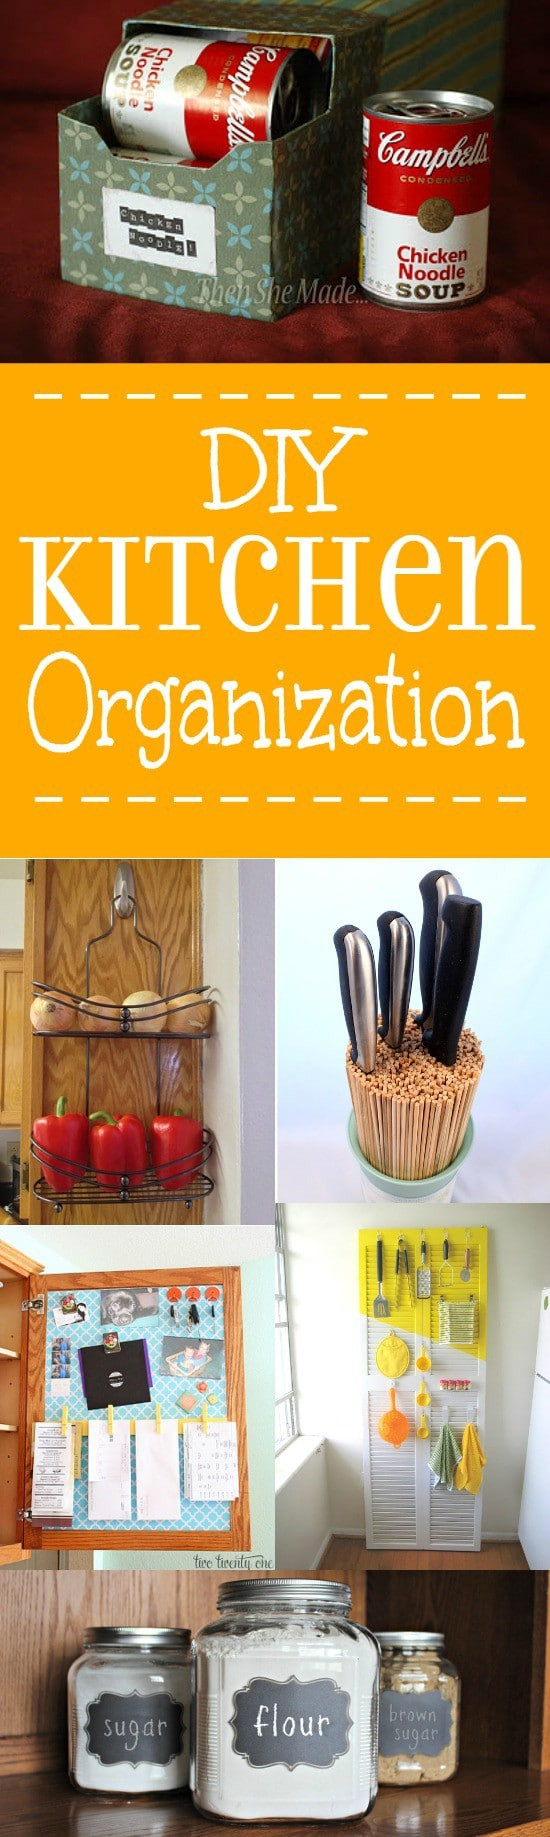 Kitchen Organization DIY
 24 DIY Kitchen Organization Ideas